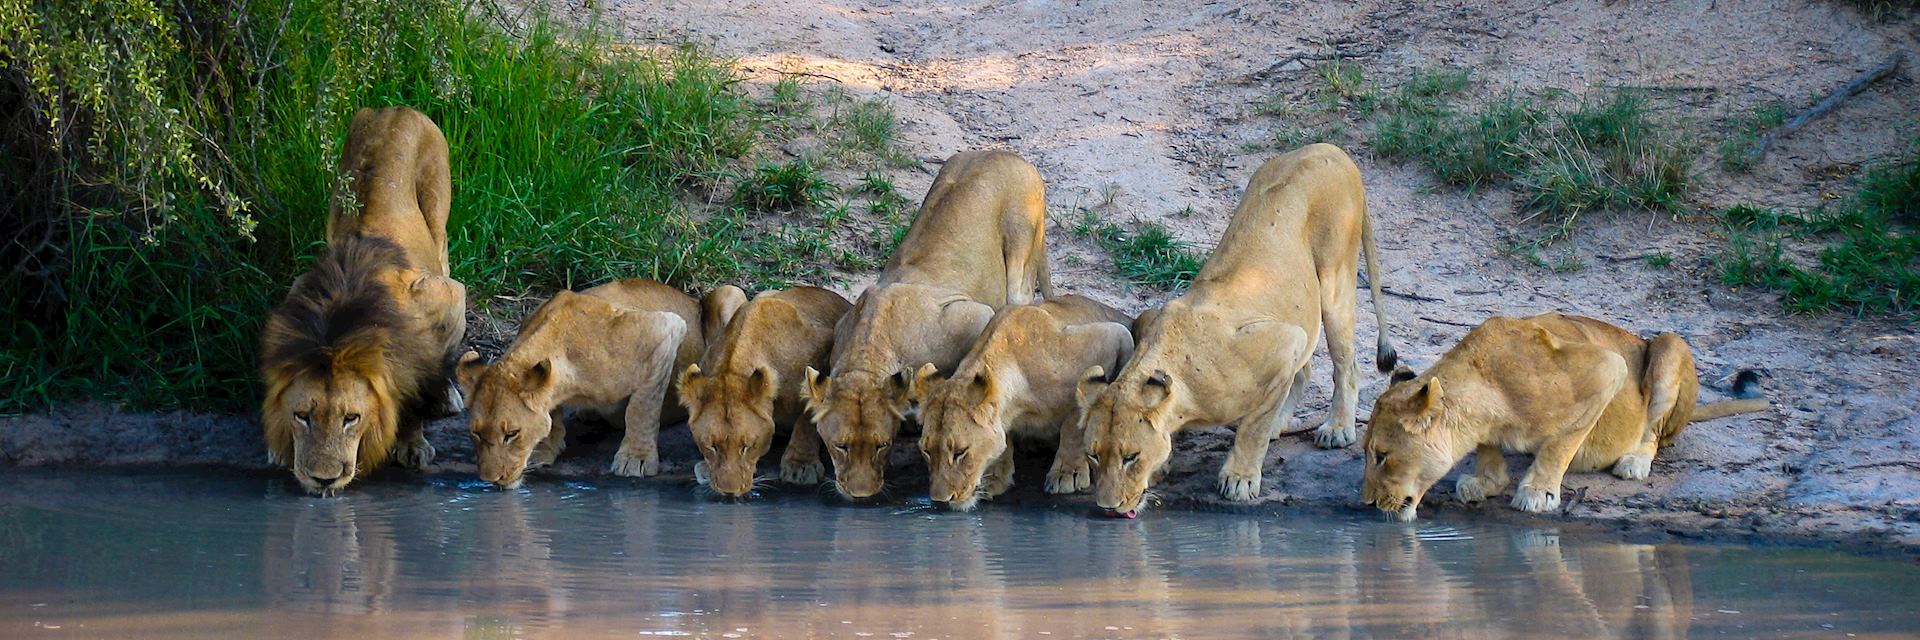 Pride of lions in Kruger National Park